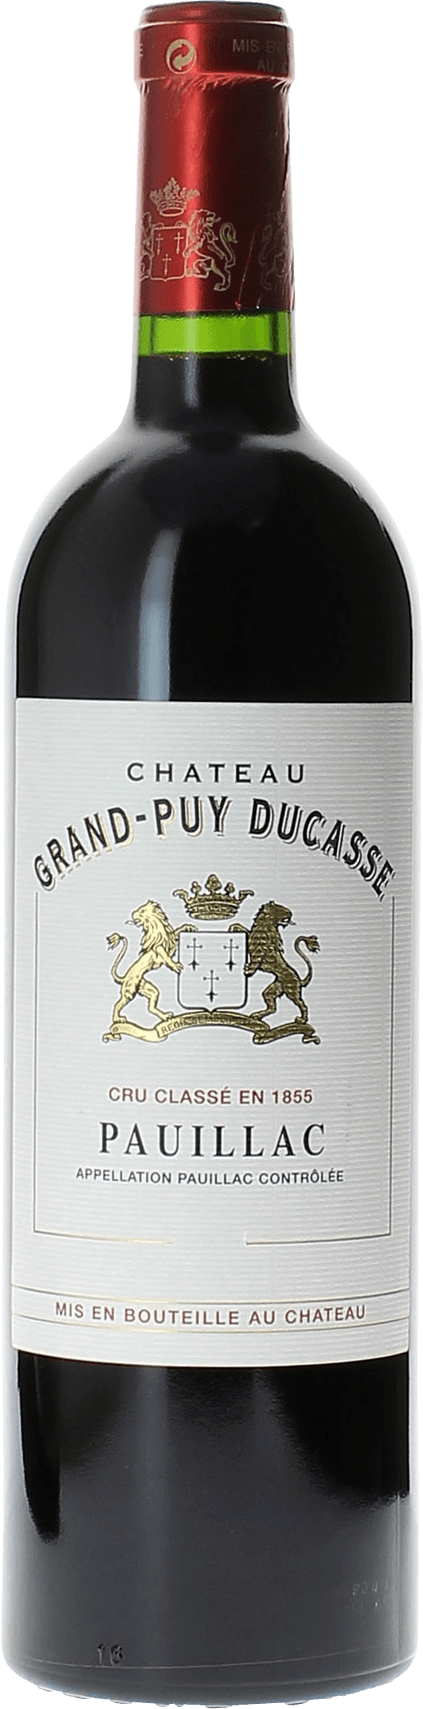 Grand puy ducasse 1993 5 me Grand cru class Pauillac, Bordeaux rouge